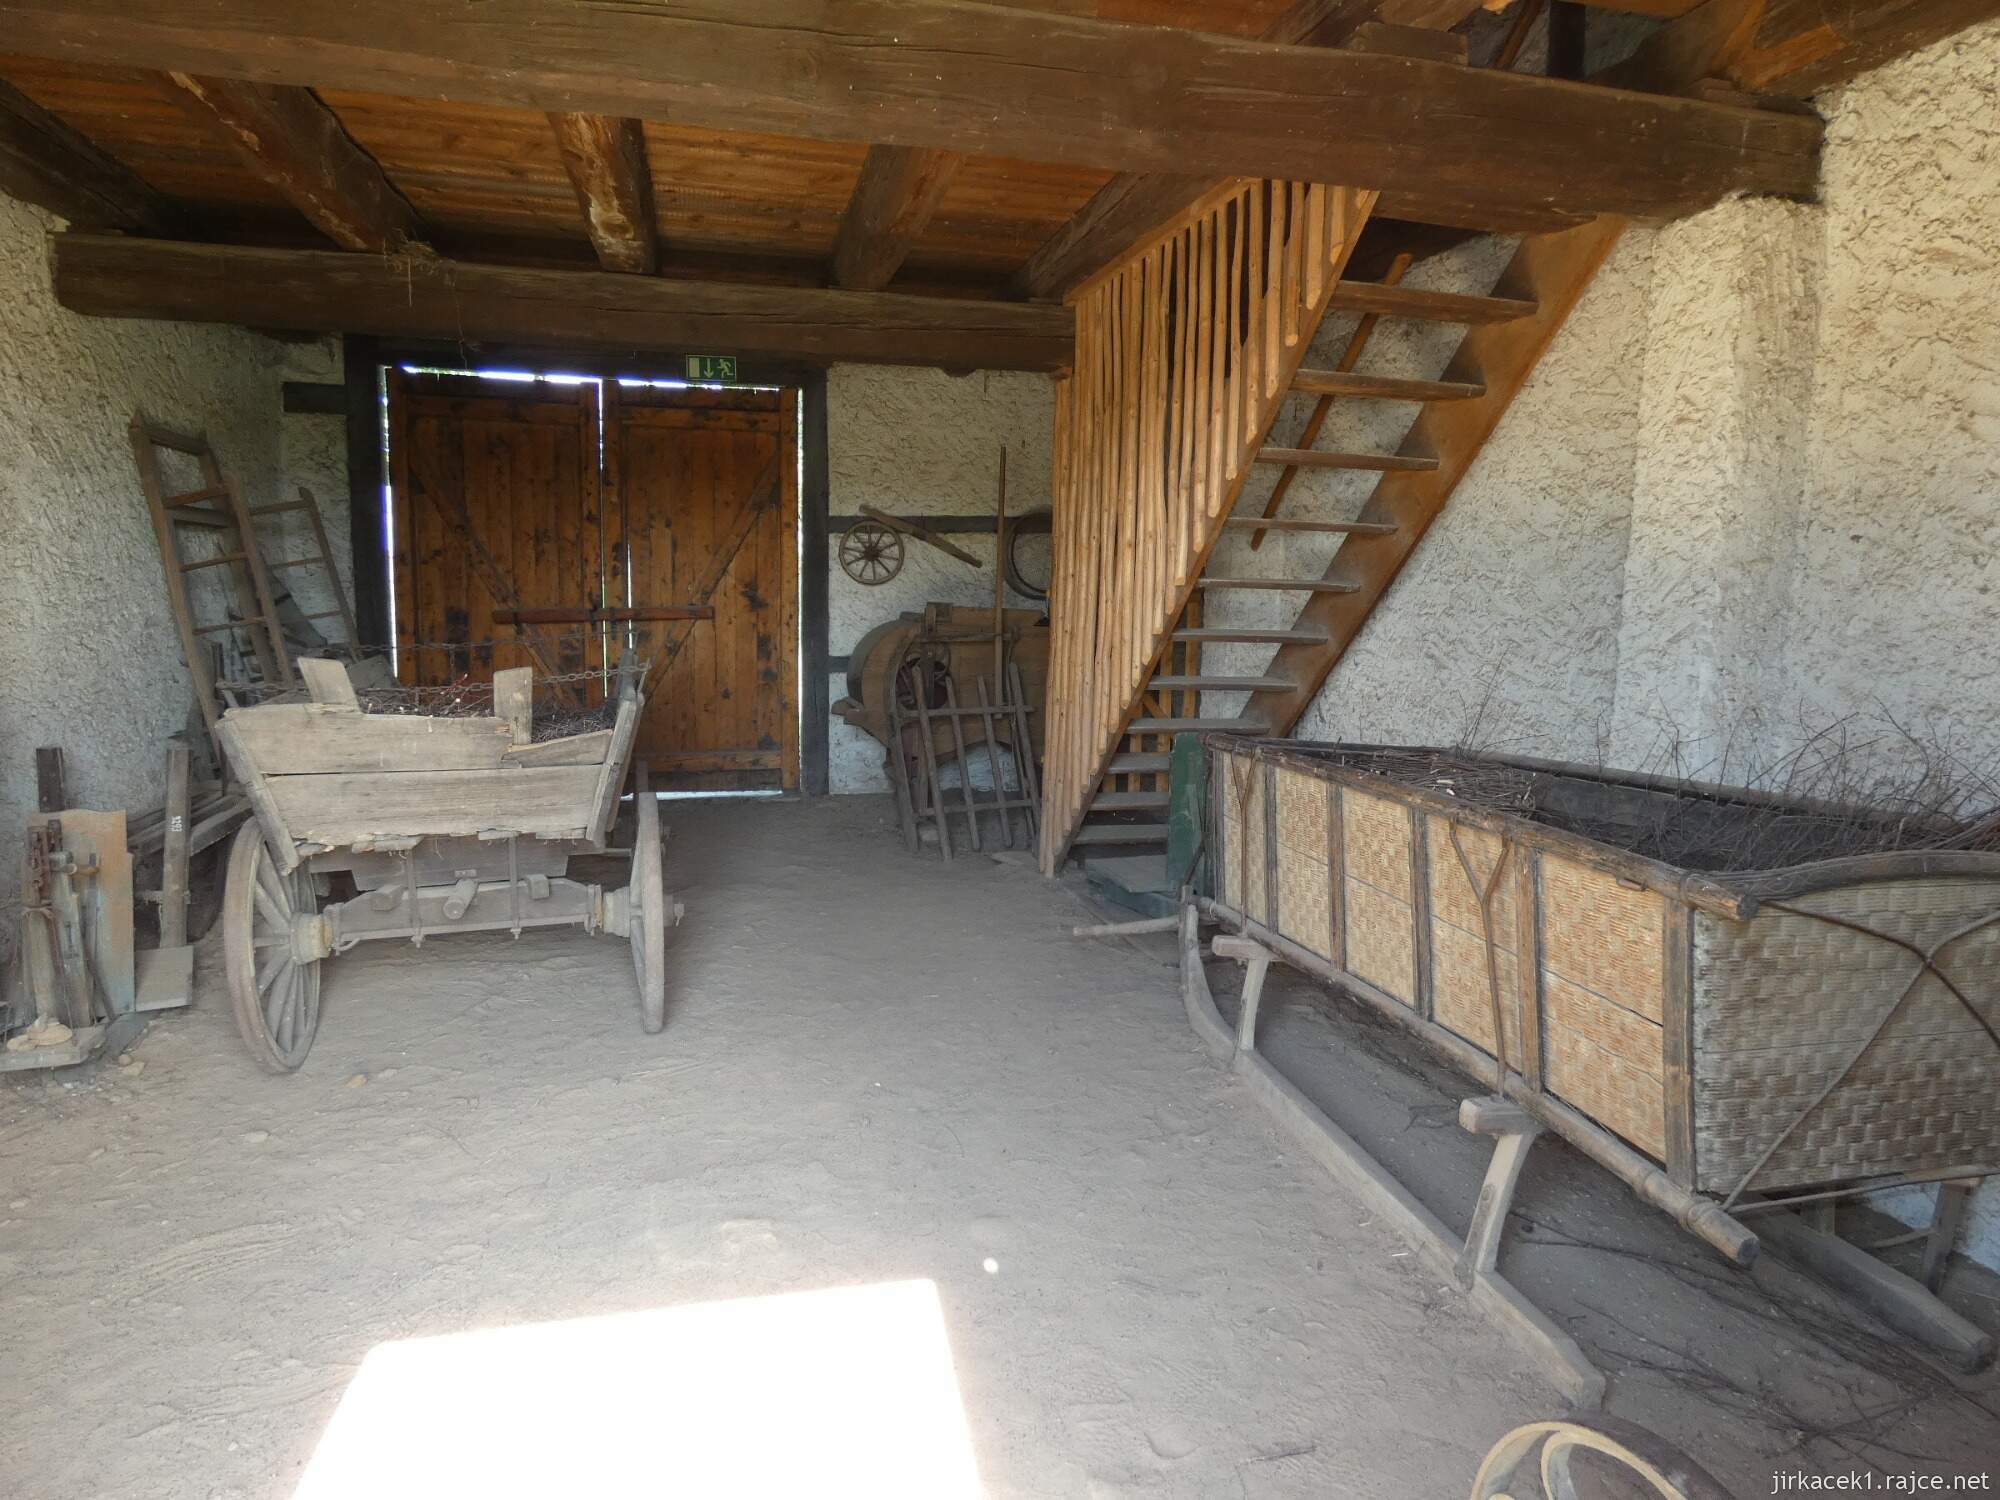 N - Kouřim - skanzen a muzeum lidových staveb 119 - dům z počátku 19. století pochází z osady Kamenná z Jílového u Děčína